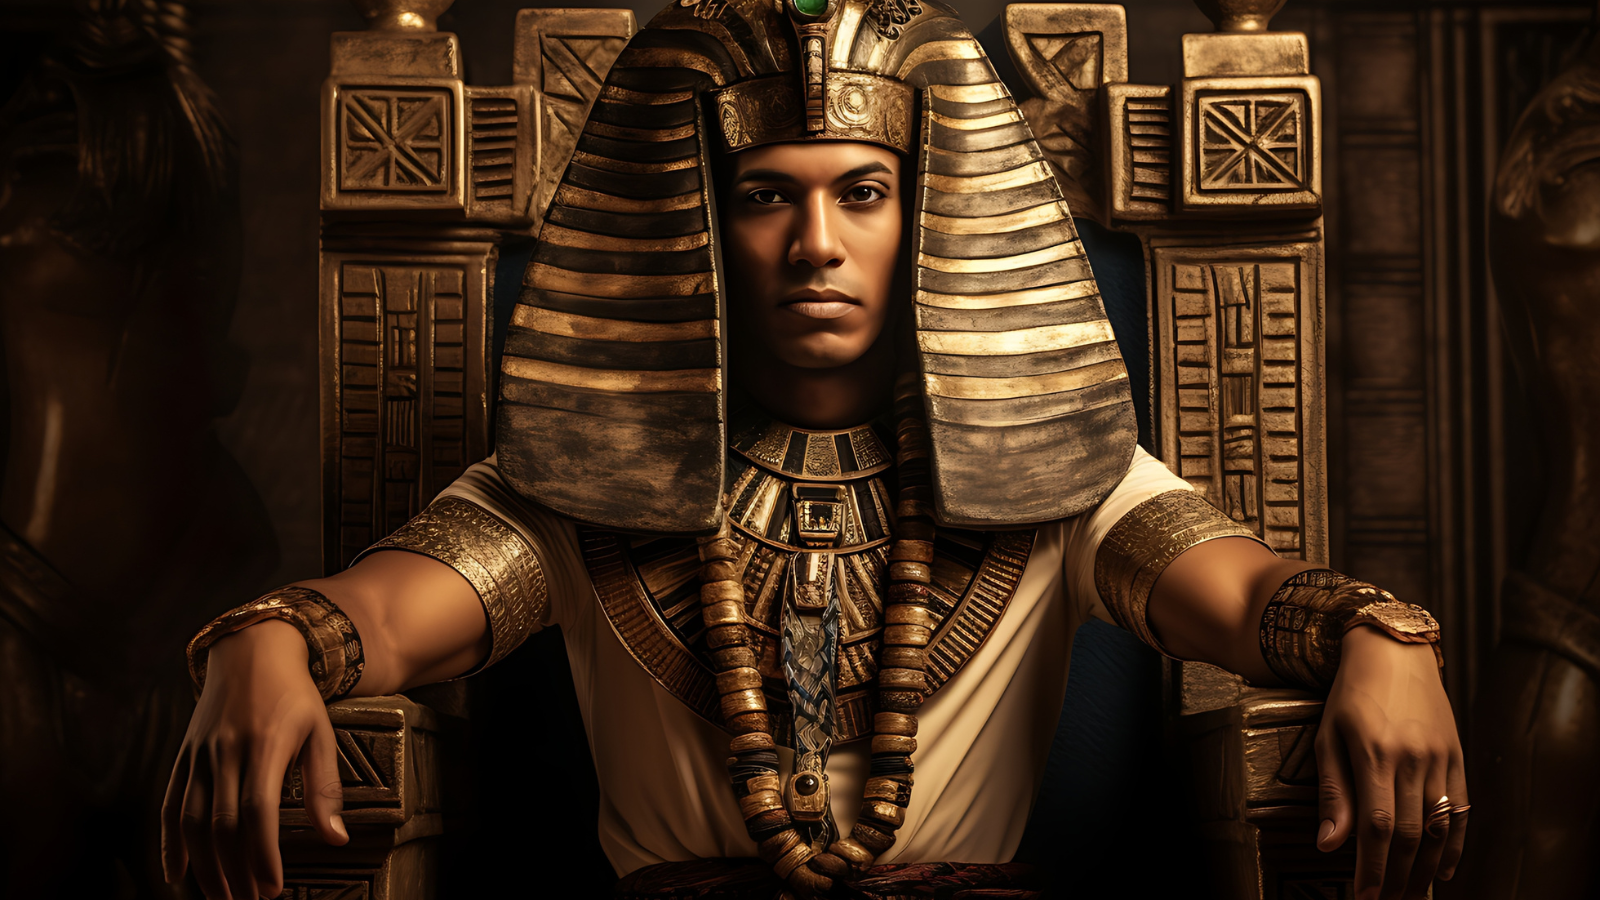 Man that looks like Pharaoh